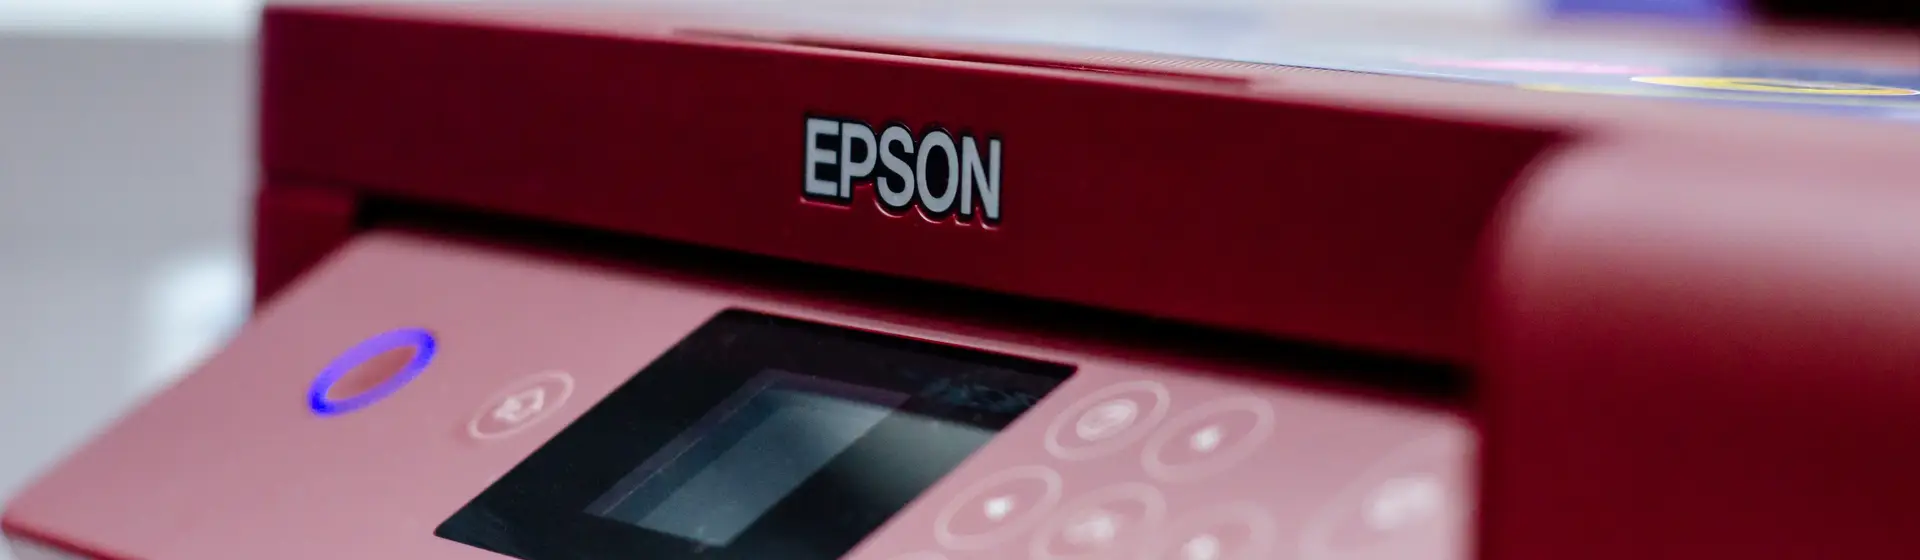 Impressora Epson Wi-Fi: 6 modelos com conexão wireless